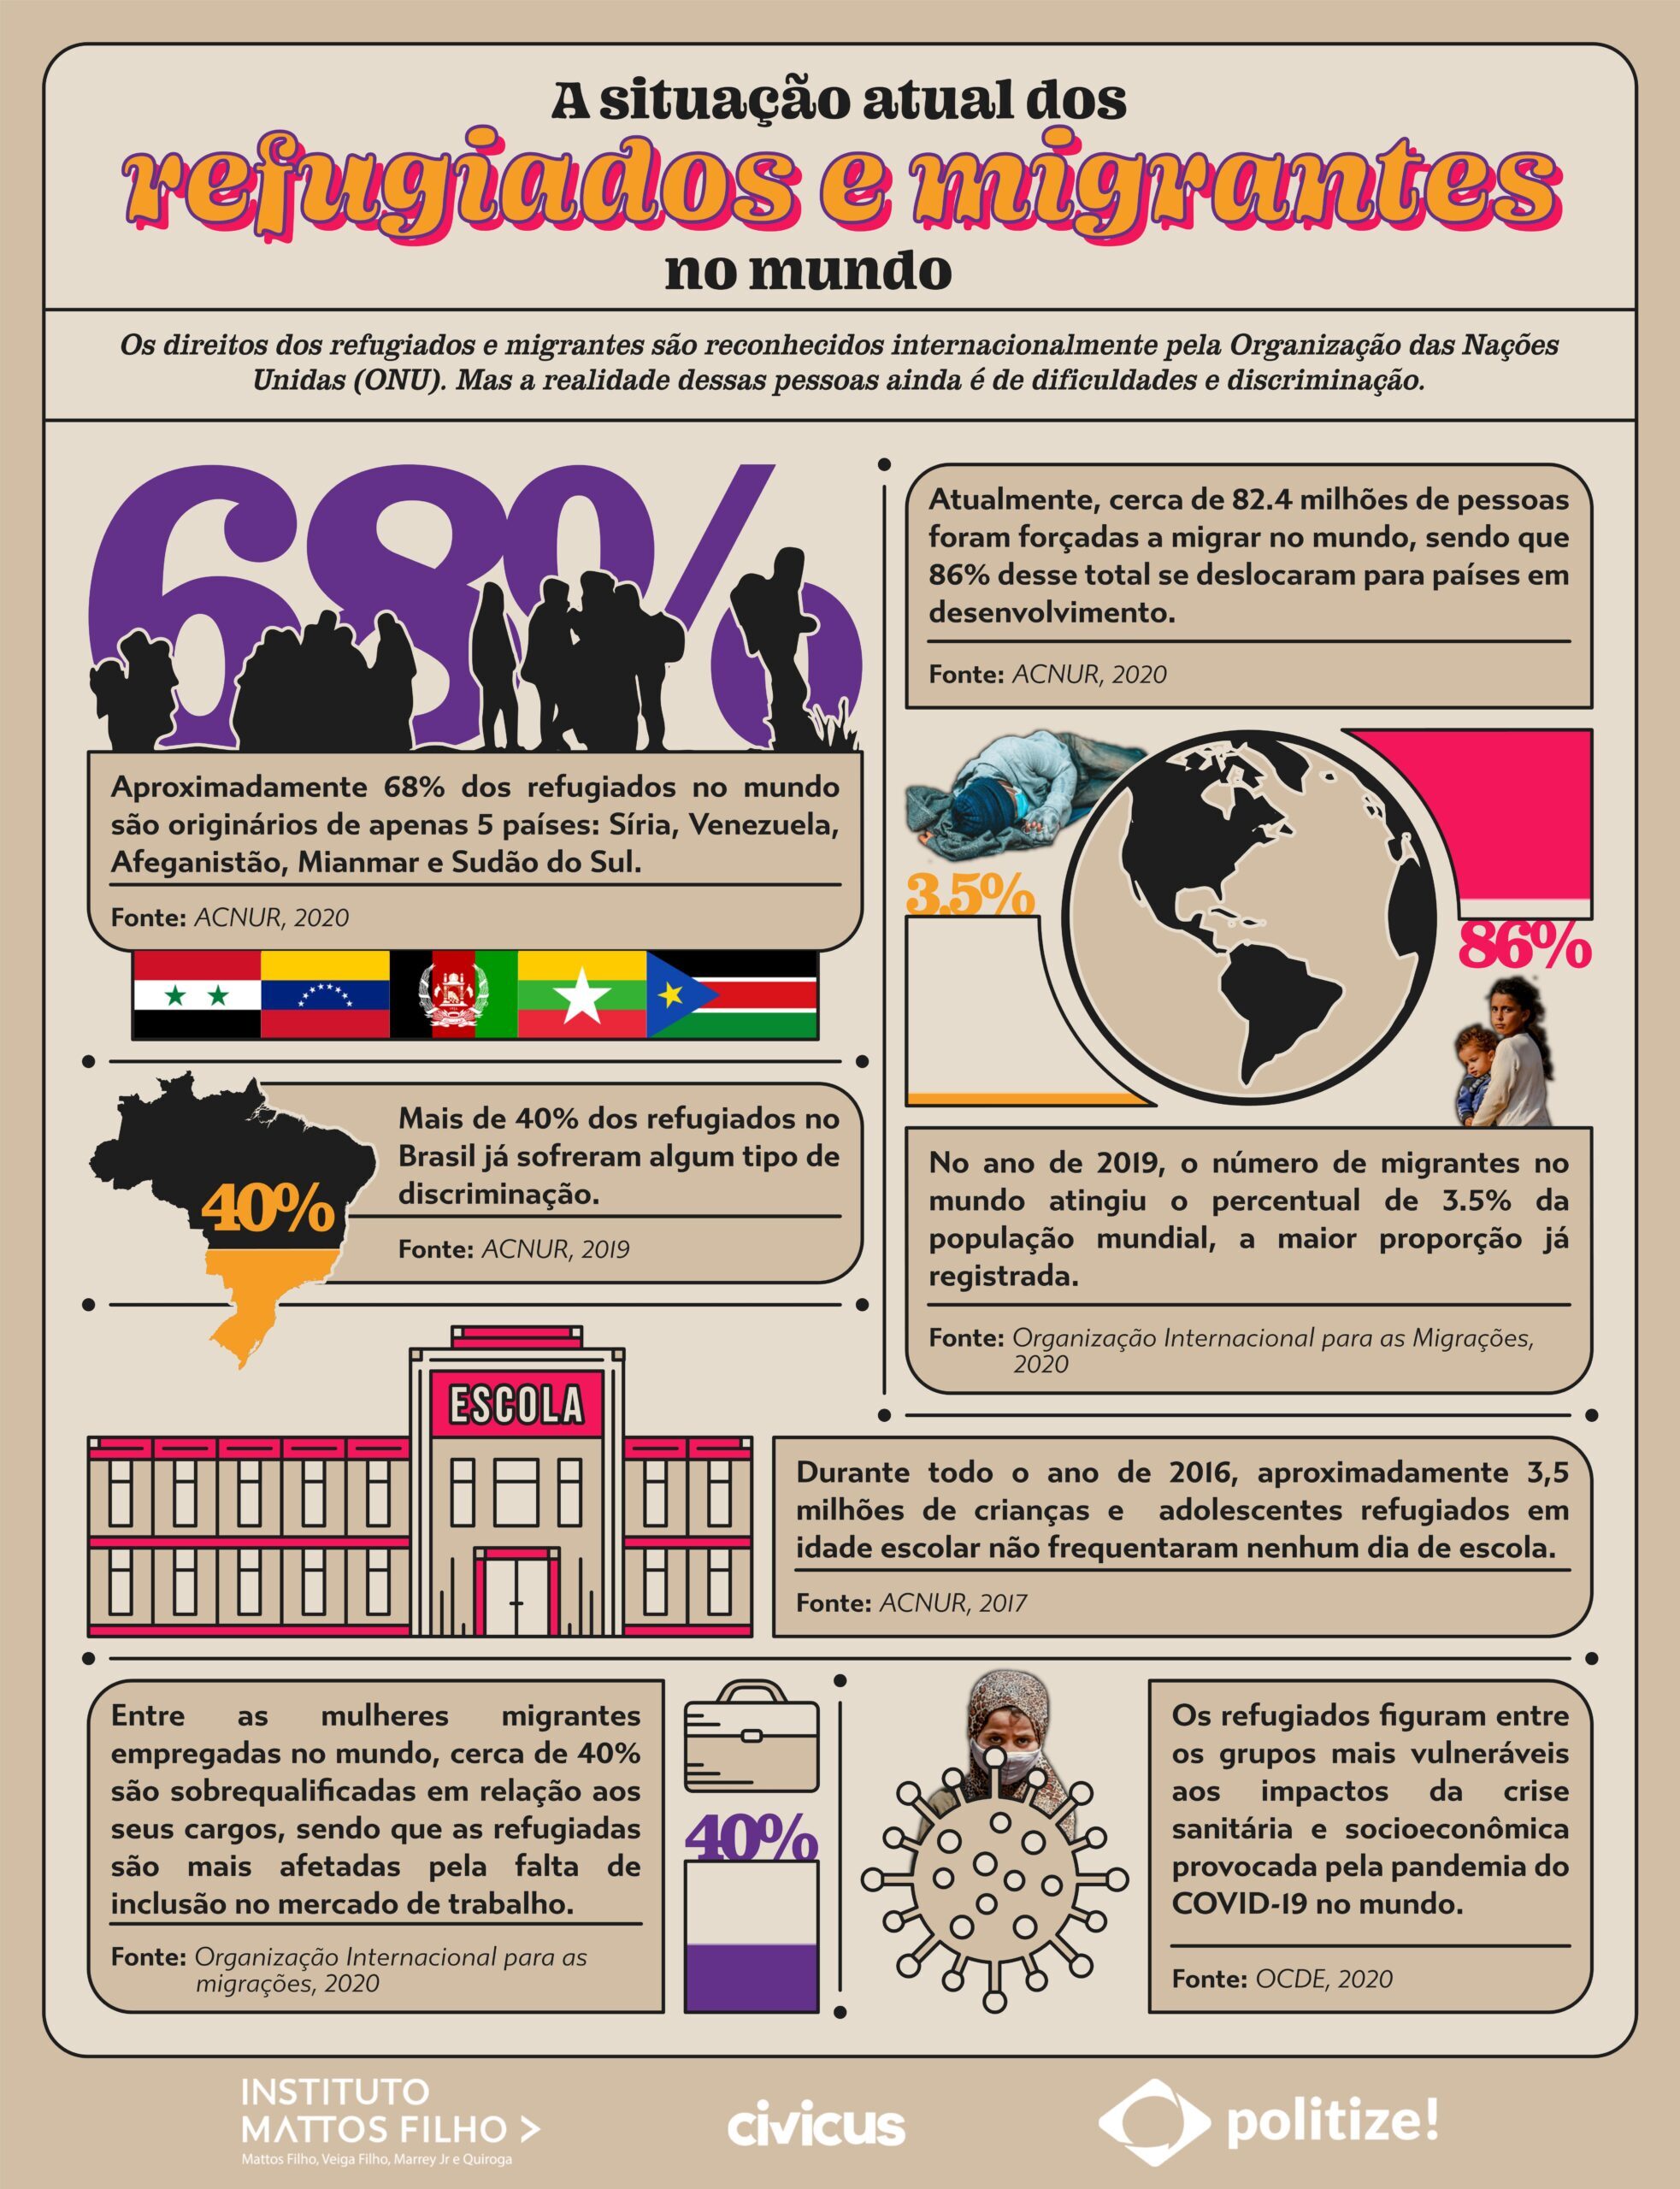 Infográfico com dados e informações sobre a situação dos direitos dos refugiados e migrantes ao redor do mundo